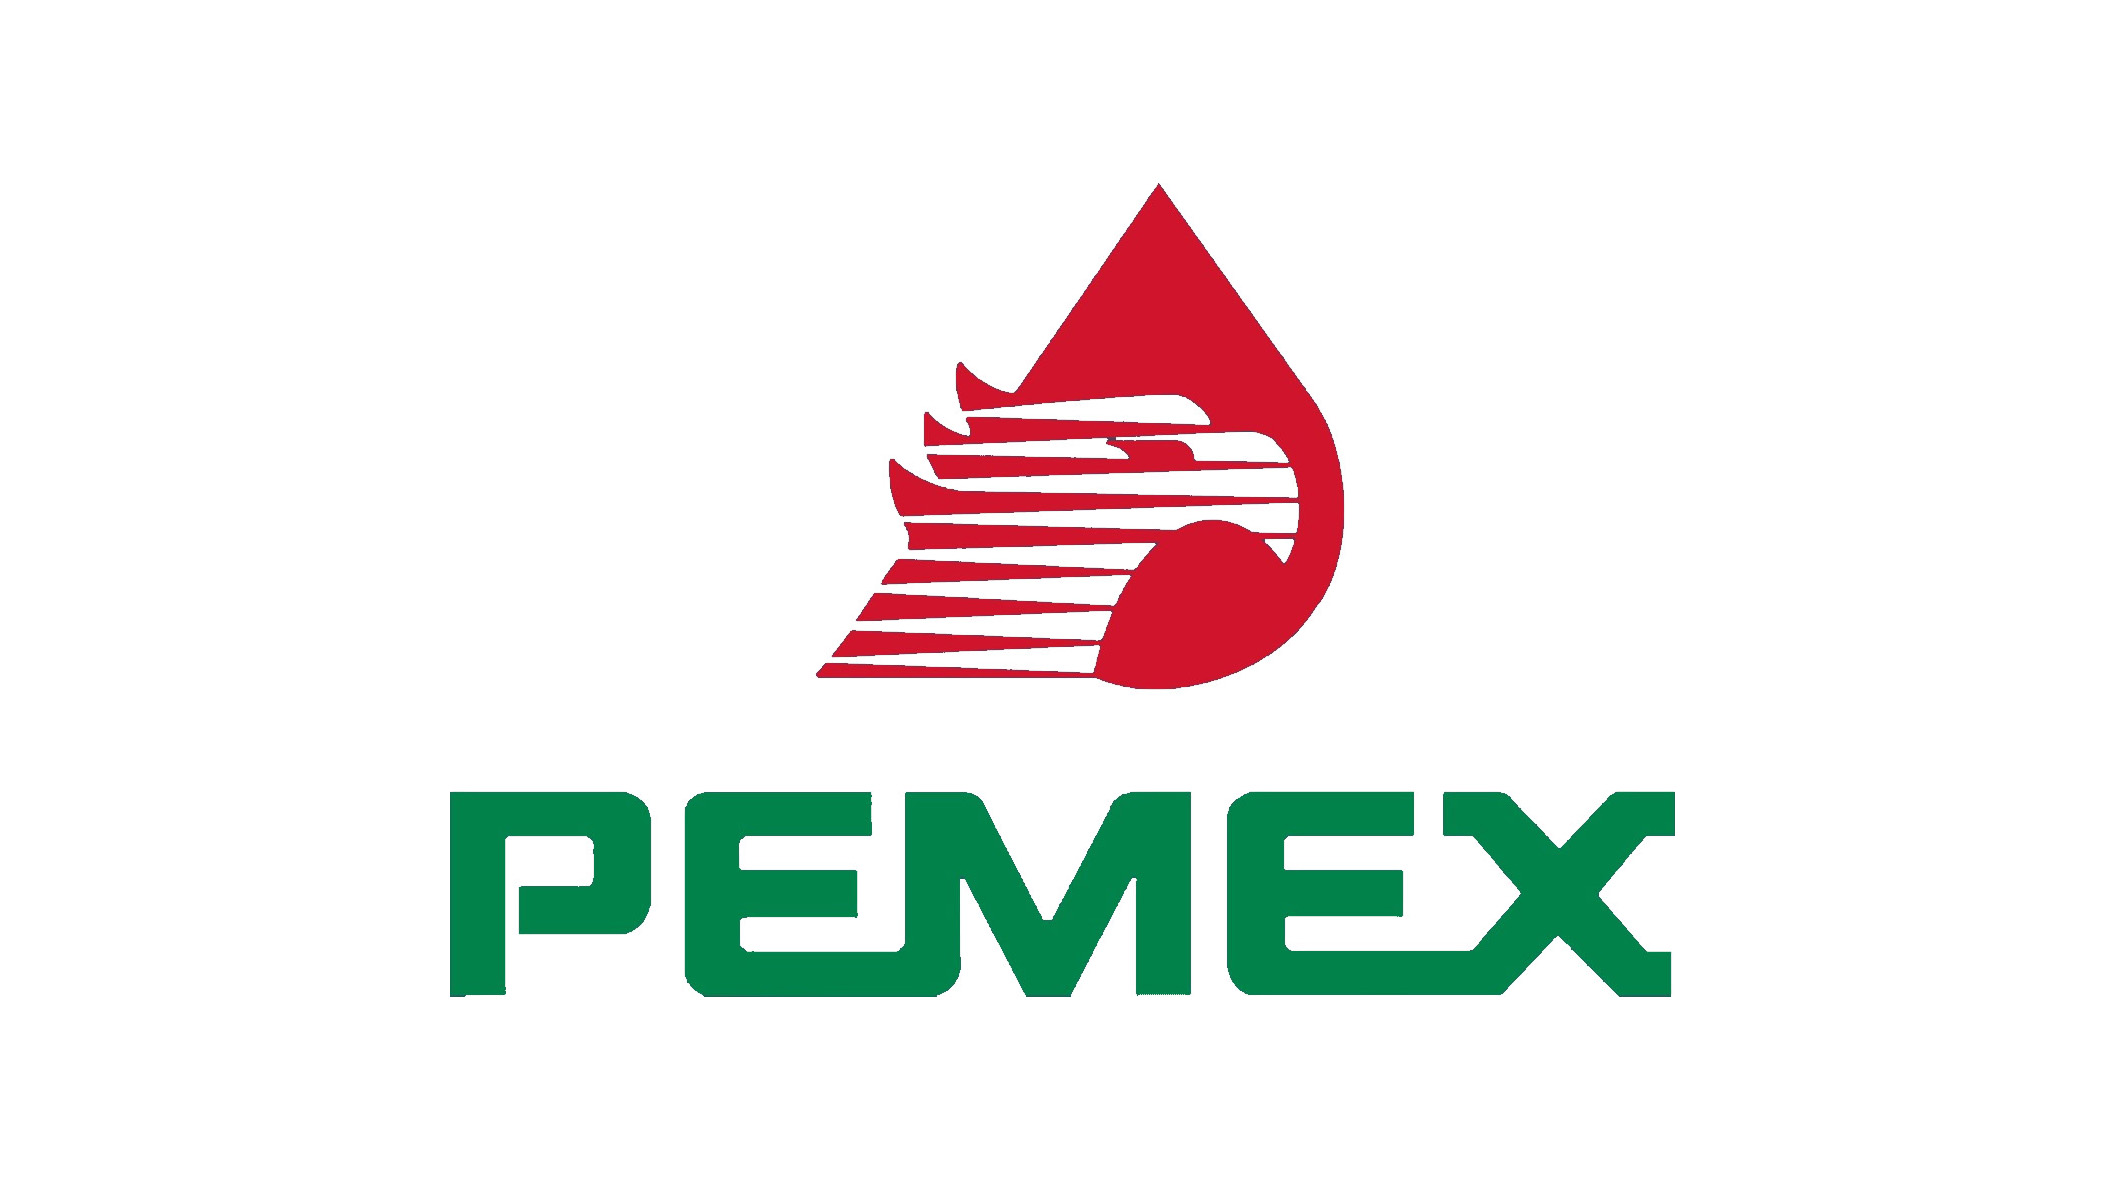 Requisitos para entrar a Pemex